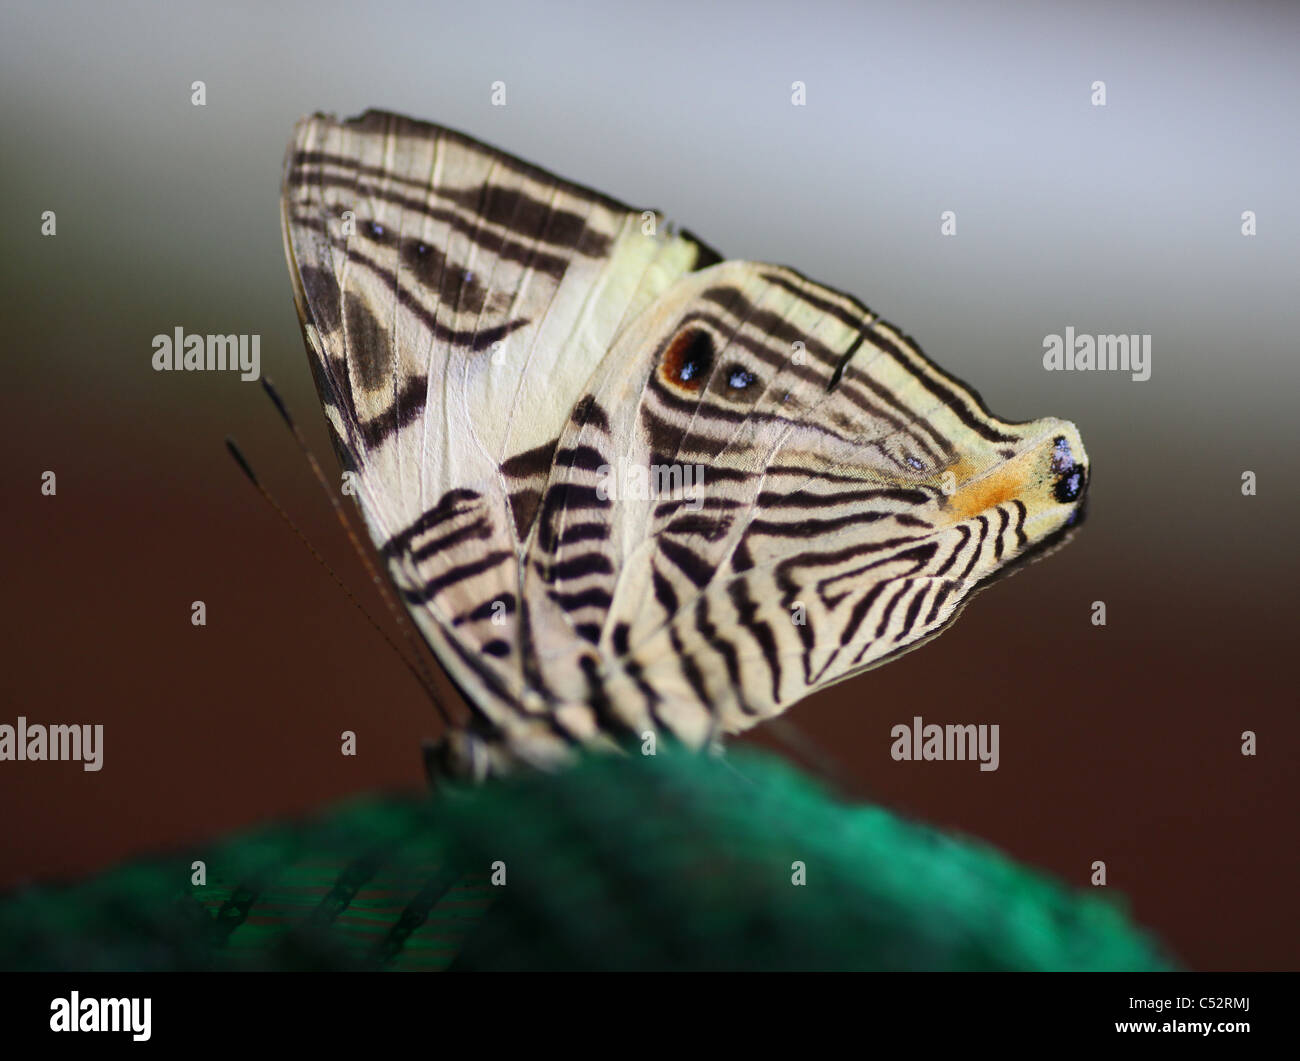 El Dirce, belleza, también conocido como el mosaico o mosaico, Zebra (Colobura dirce) es una mariposa de la familia Nymphalidae. Foto de stock